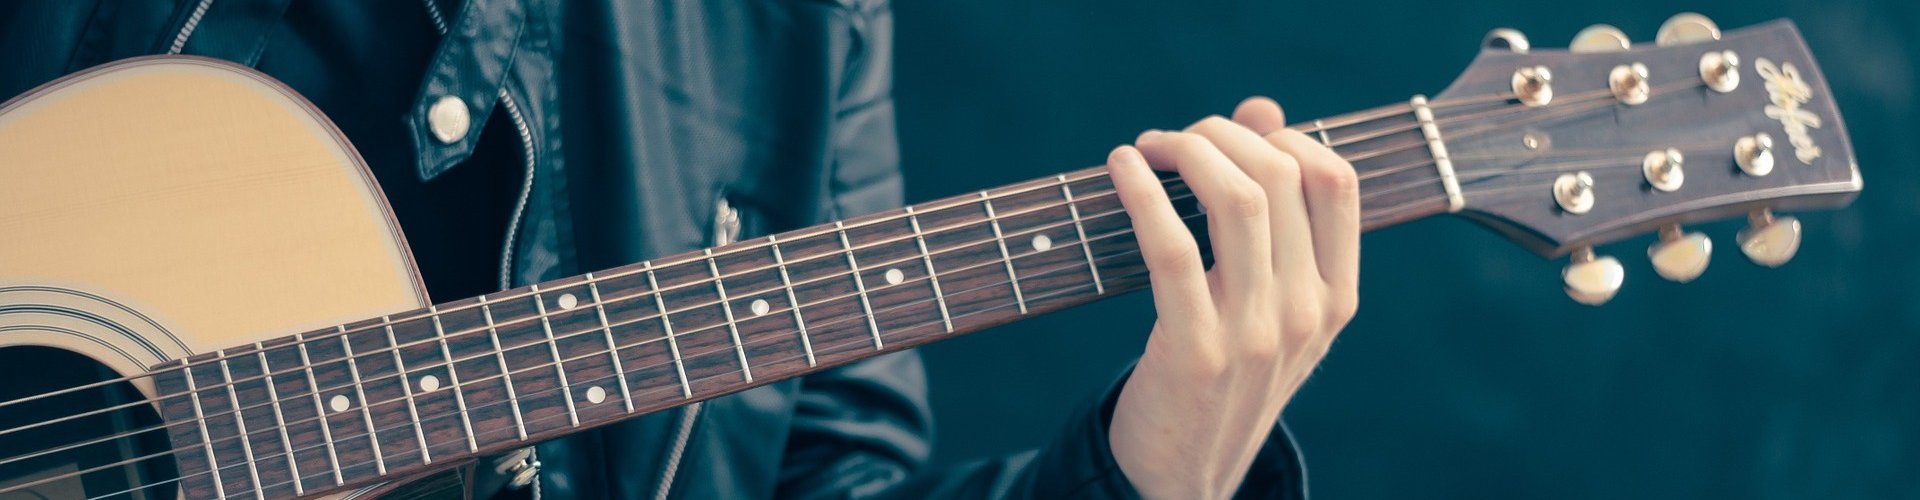 Allerlei soorten factor Stal Online gitaarlessen - OnlineMuziekCursus.nl